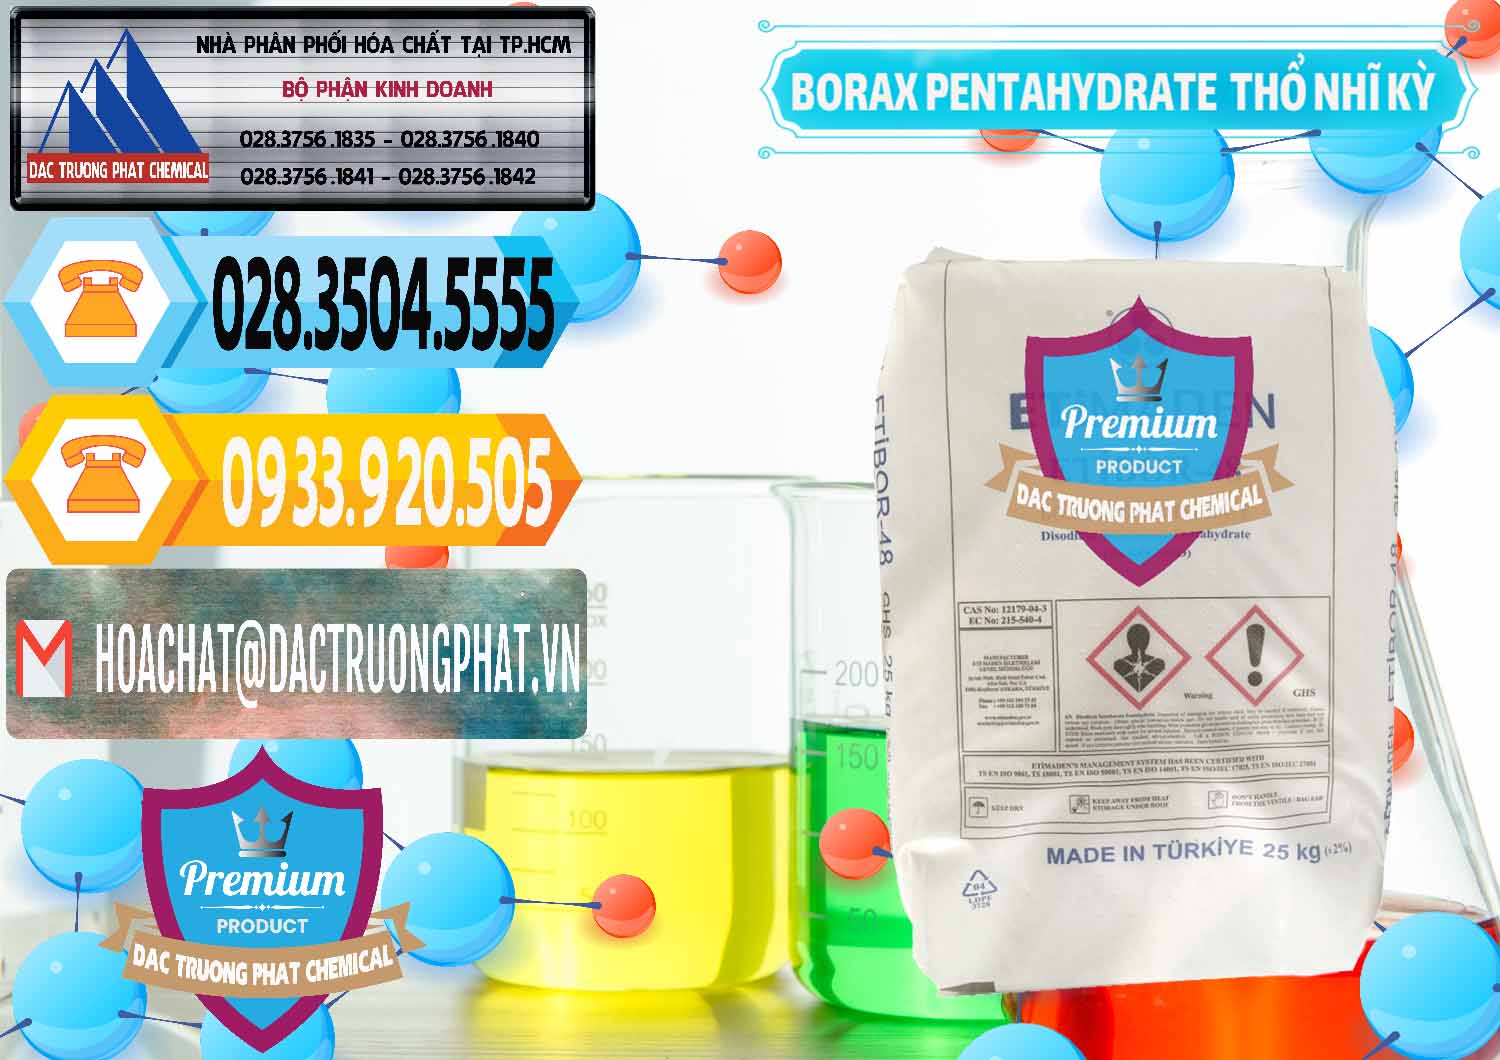 Đơn vị chuyên bán _ cung ứng Borax Pentahydrate Thổ Nhĩ Kỳ Turkey - 0431 - Nơi cung cấp _ phân phối hóa chất tại TP.HCM - hoachattayrua.net